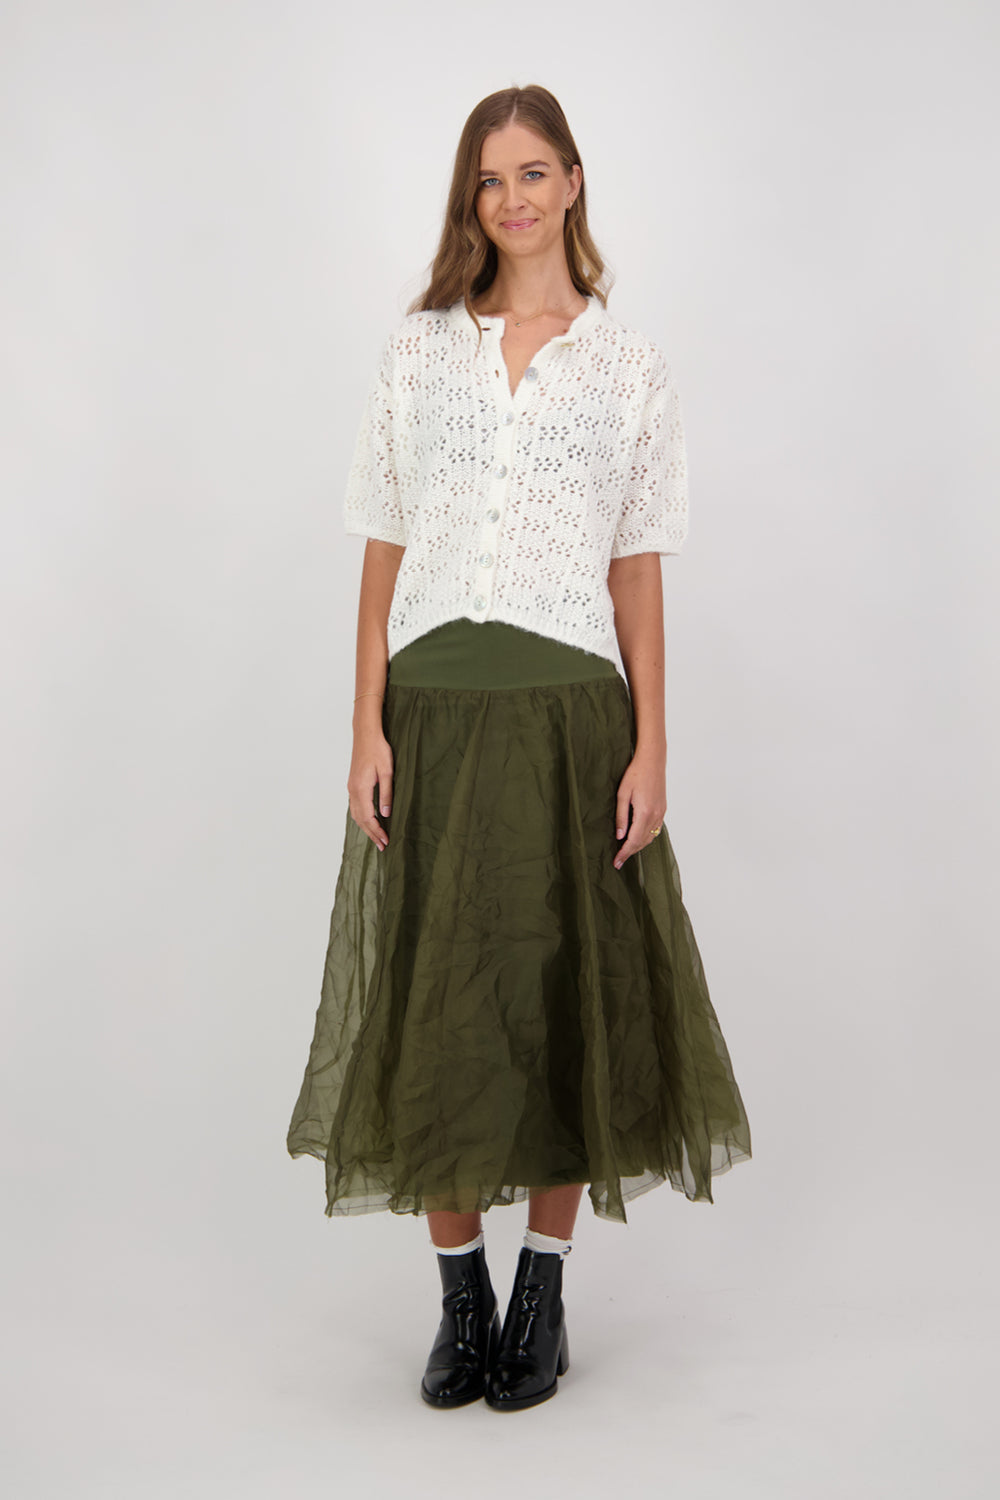 Briarwood Chanel Skirt - Khaki